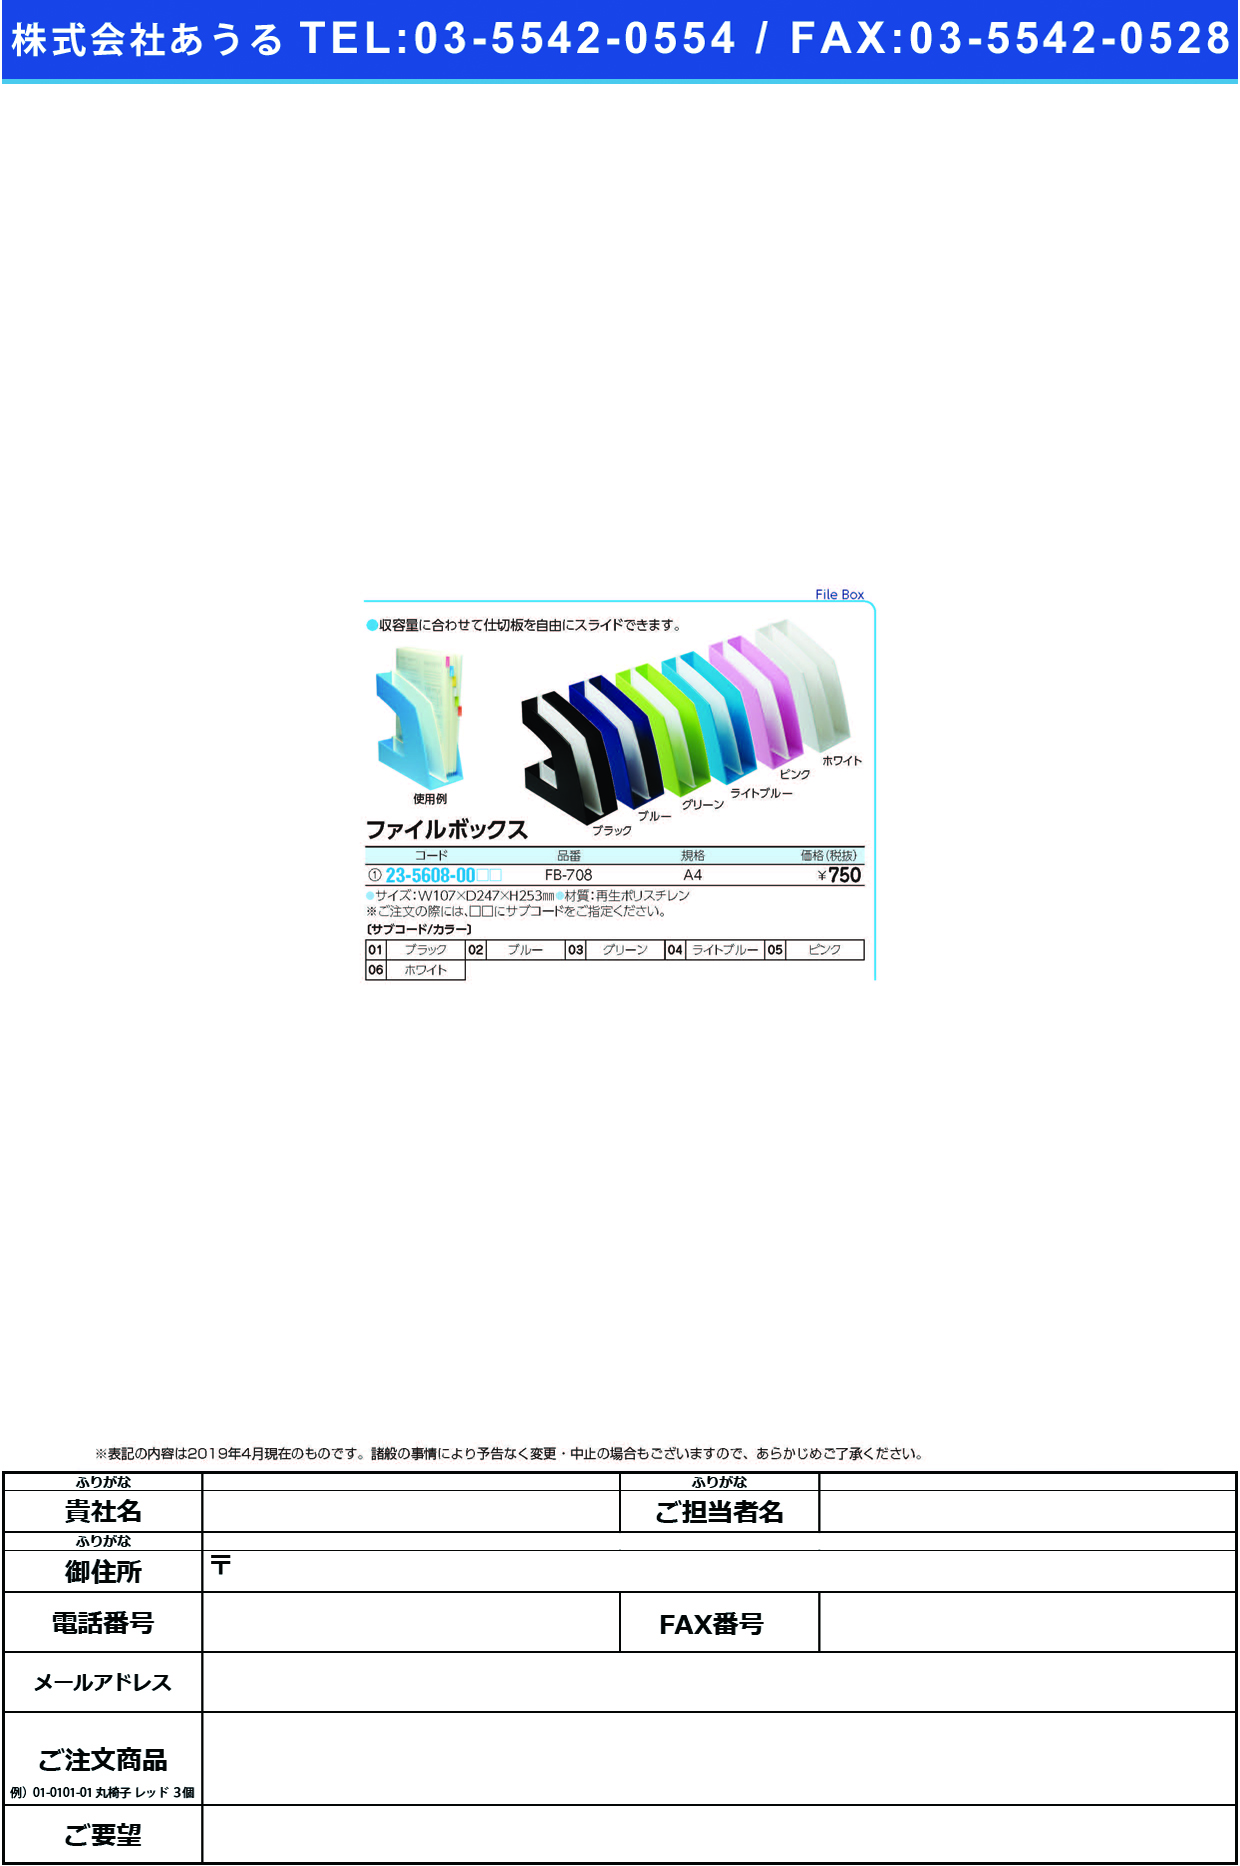 (23-5608-00)ファイルボックス FB-708(A4) ﾌｧｲﾙﾎﾞｯｸｽ ホワイト【1個単位】【2019年カタログ商品】